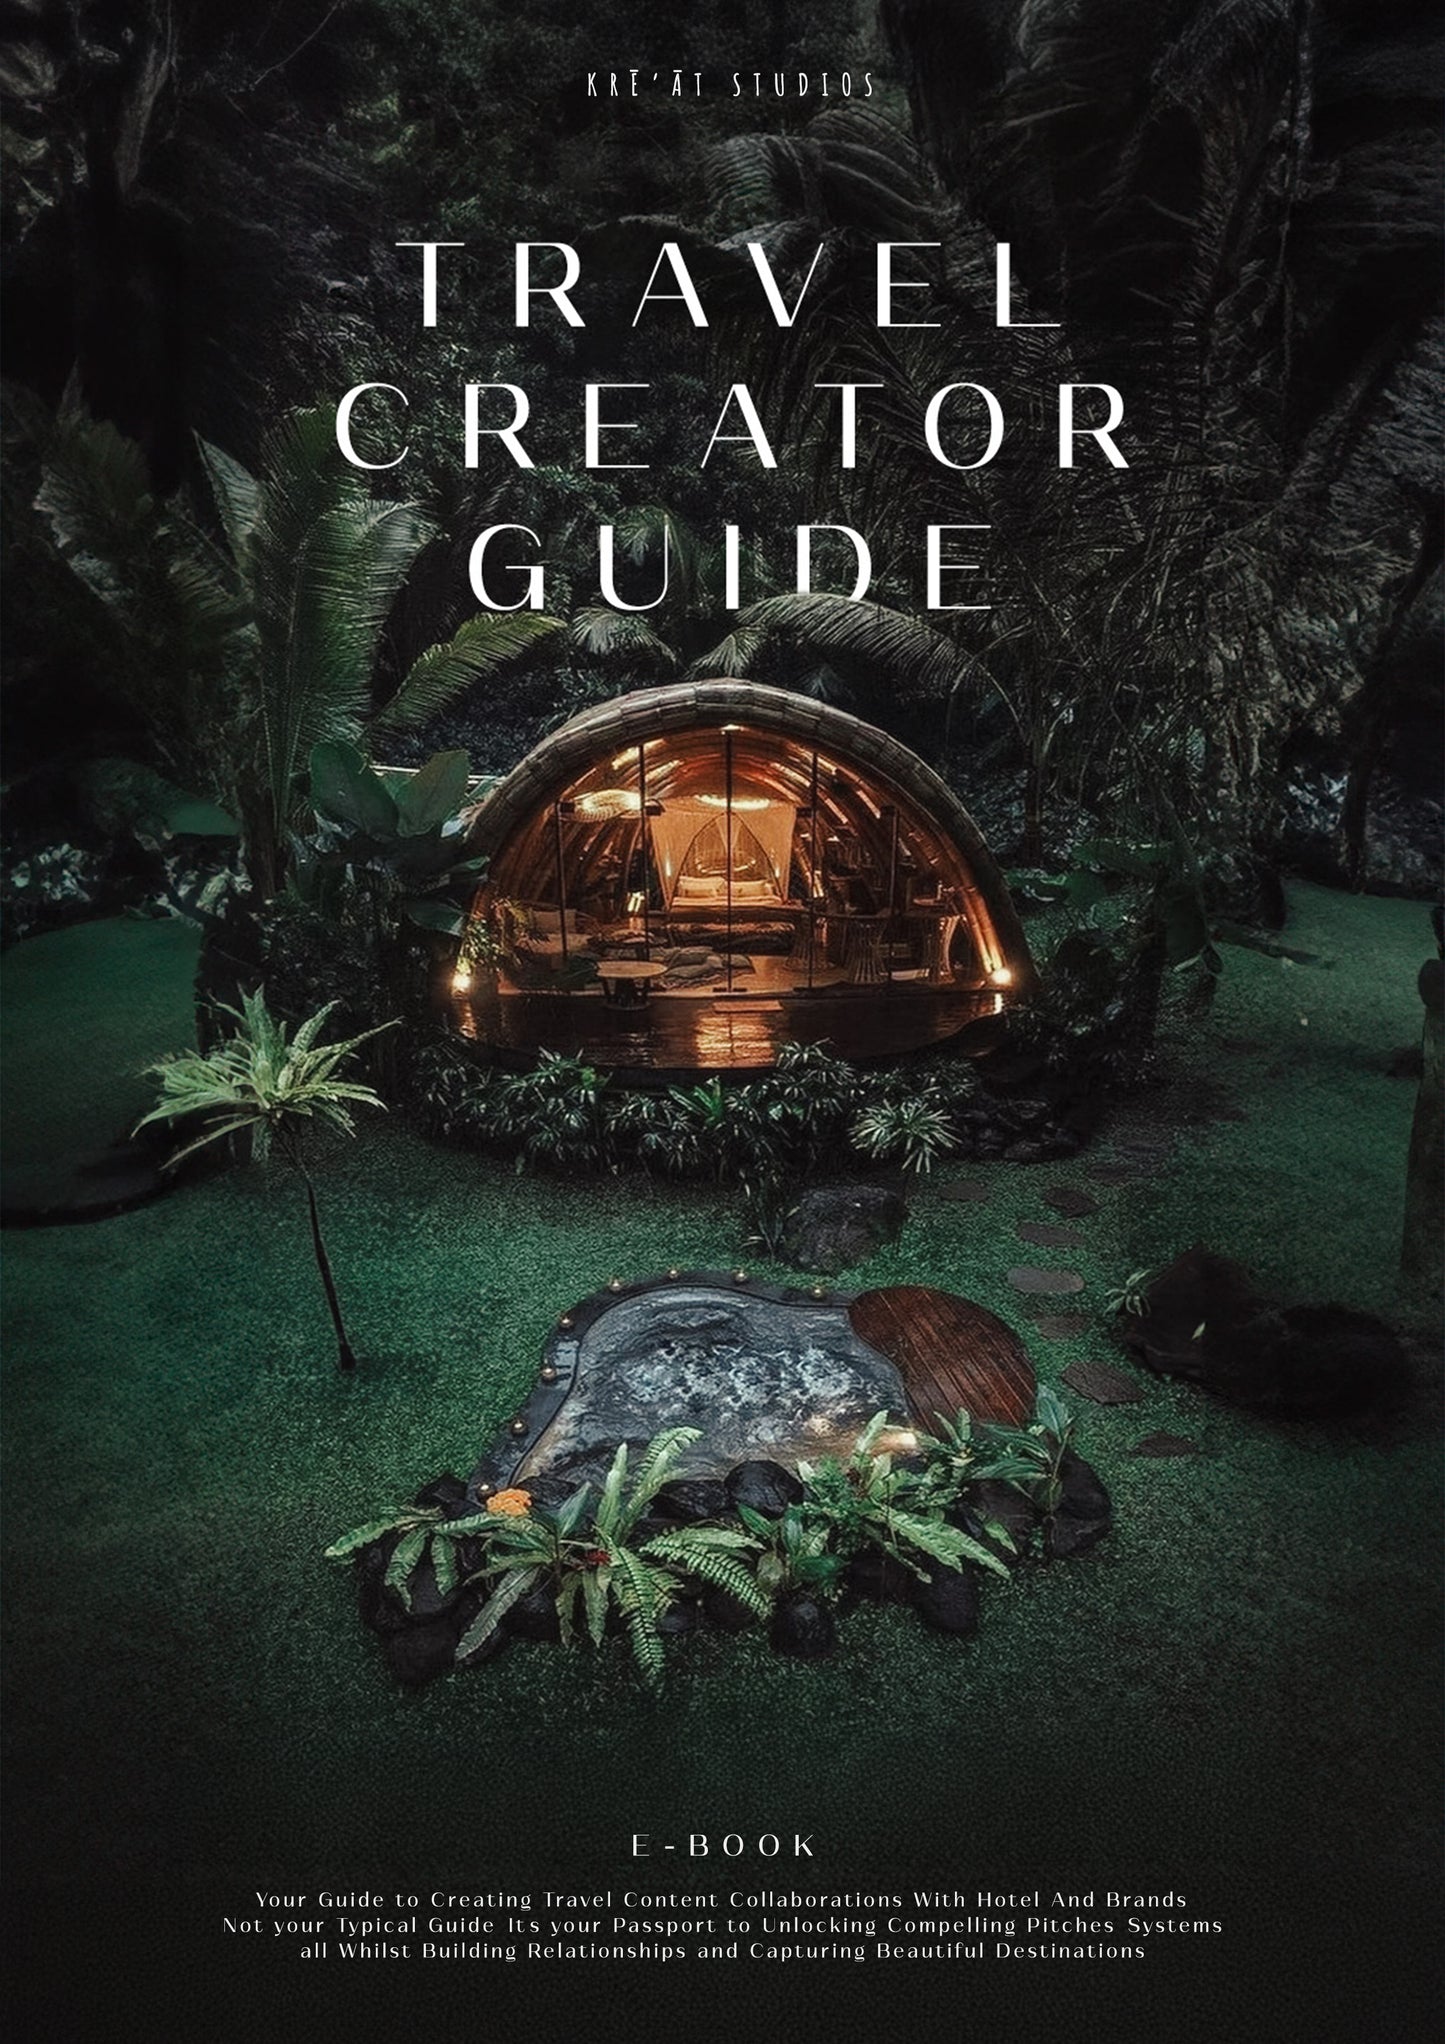 Travel Creator Guide - COMPLETE E-BOOK